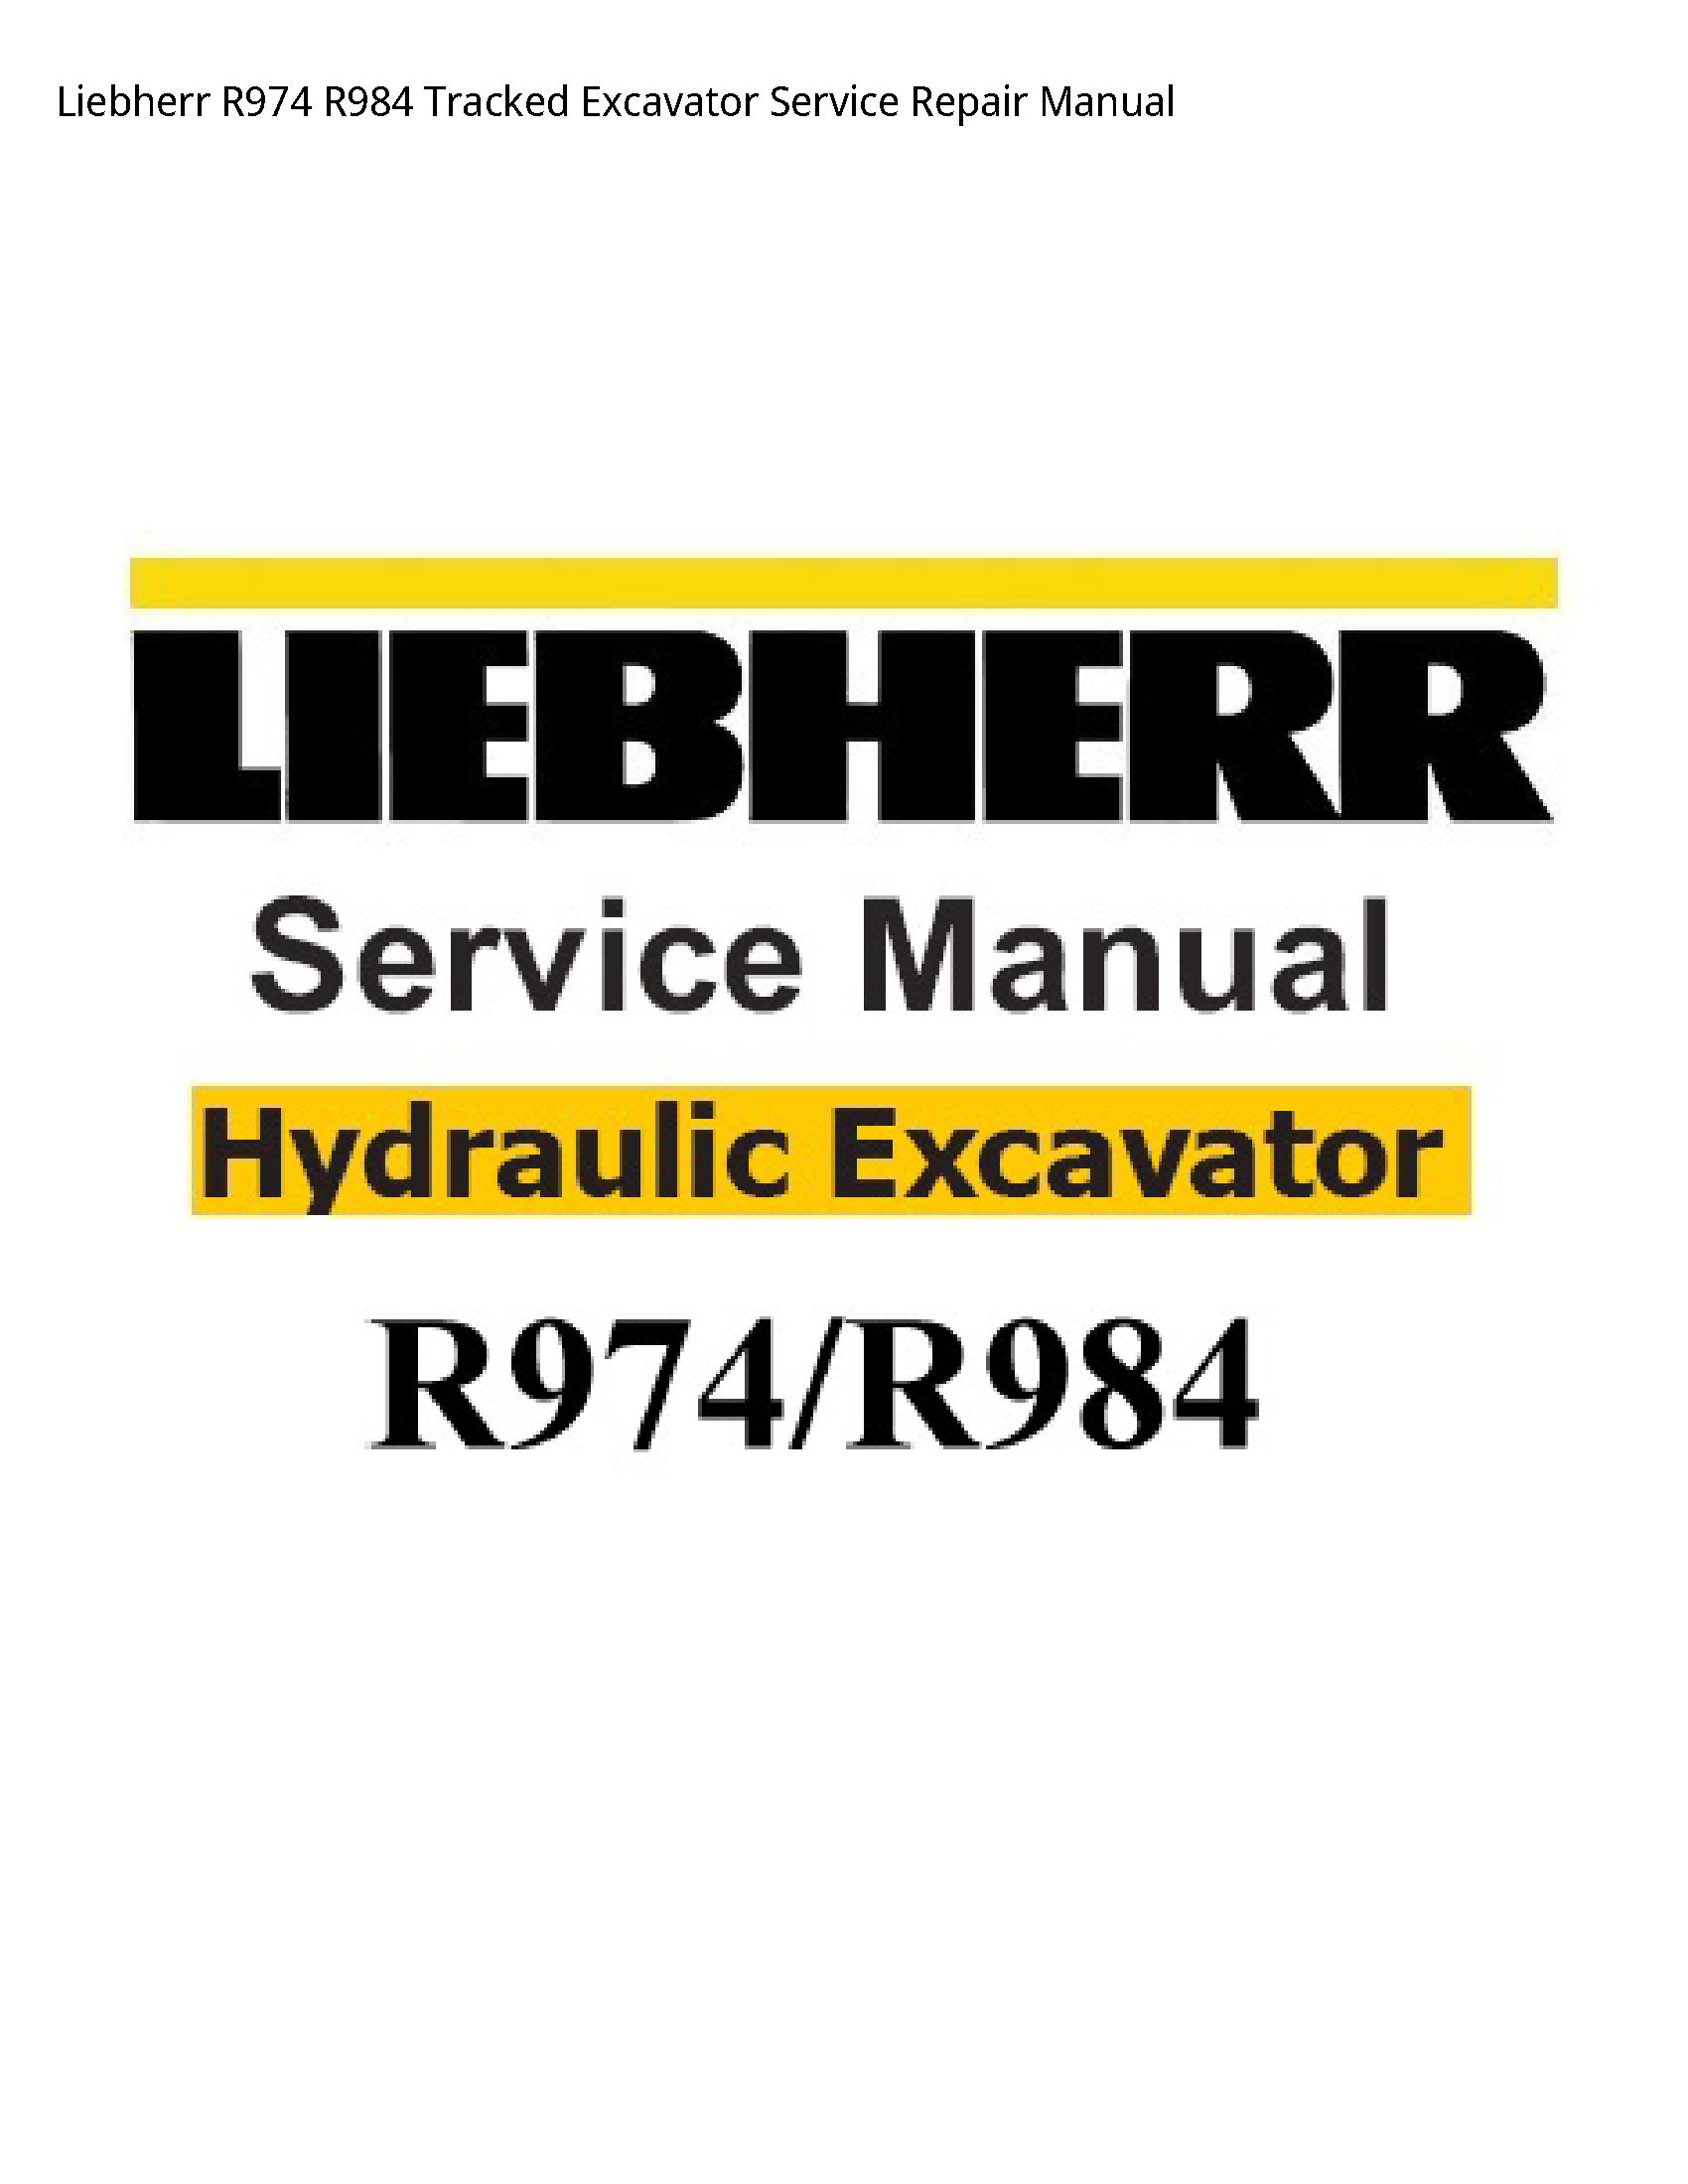 Liebherr R974 Tracked Excavator manual